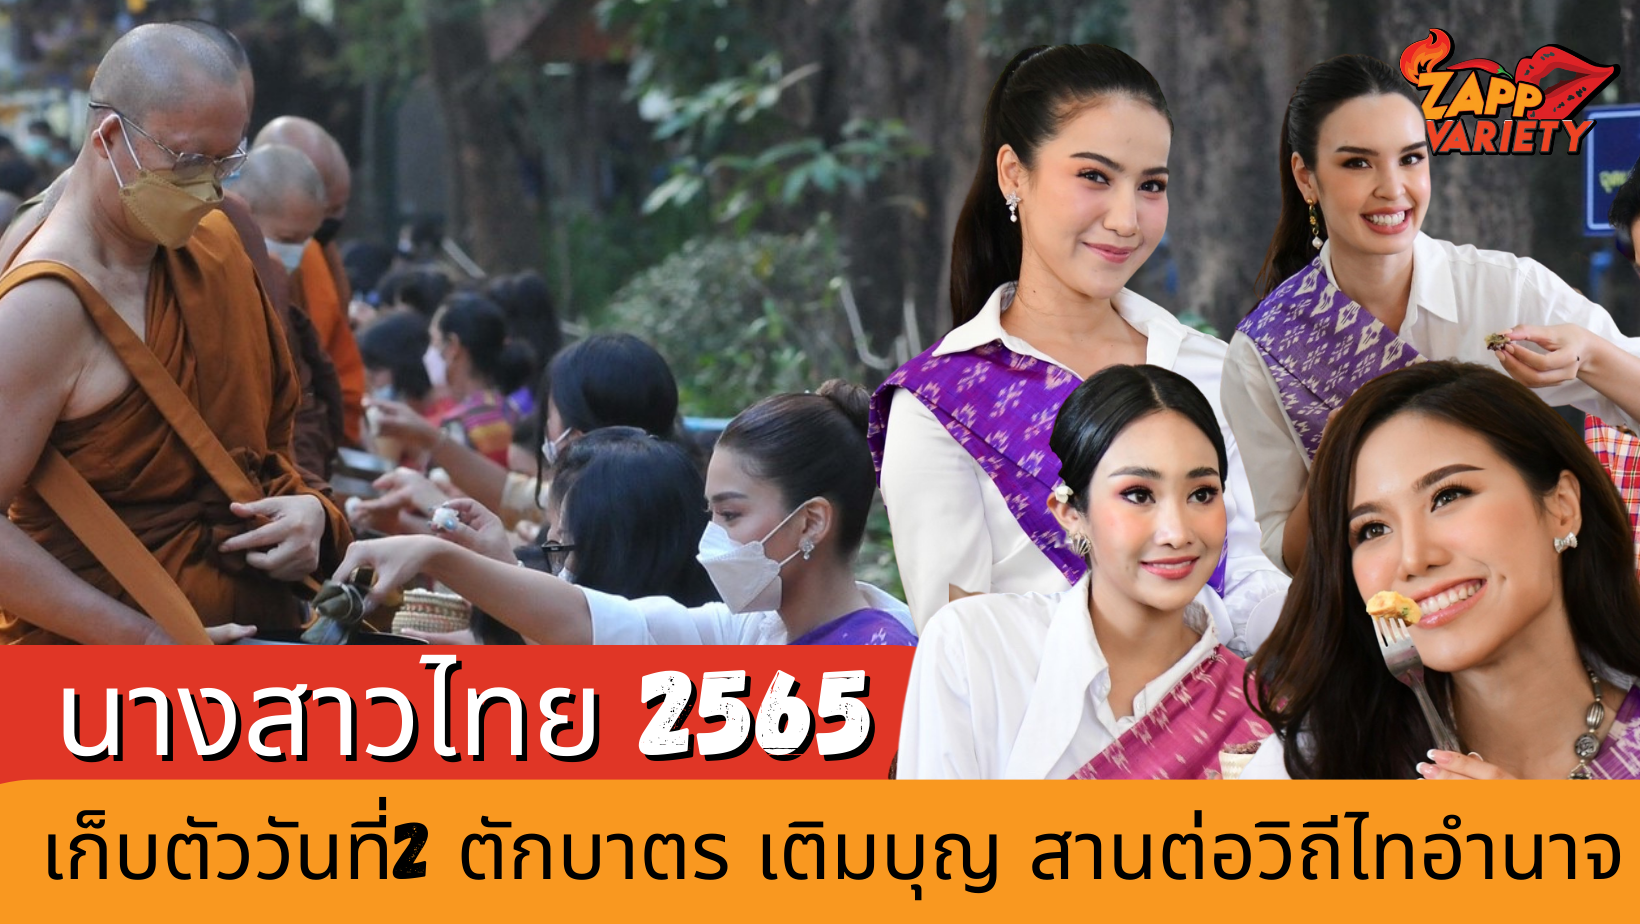 นางสาวไทย 2565 เก็บตัววันที่ 2 เริ่มต้นวันด้วยการตักบาตร เติมบุญ สานต่อวิถีไทอำนาจ